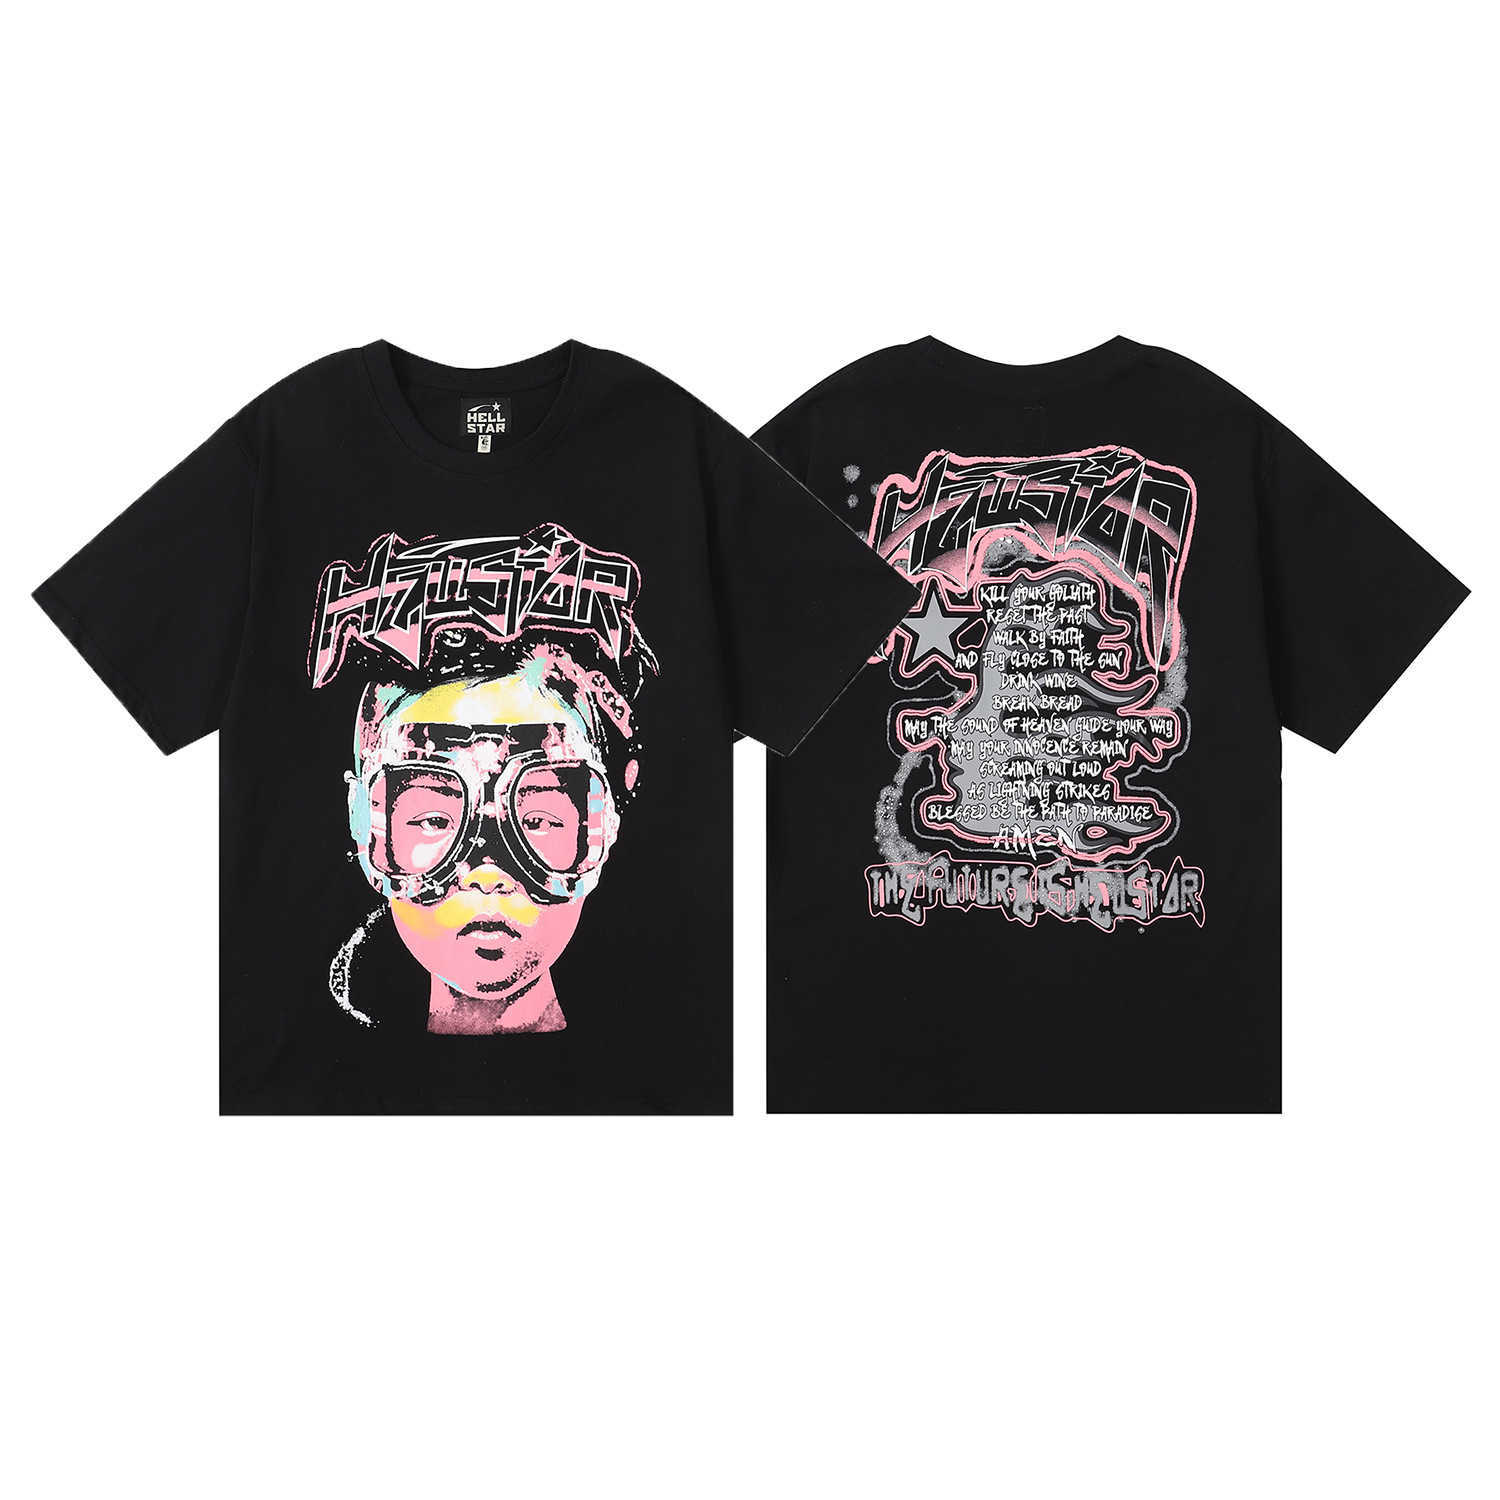 Homens camisetas Hellstar algodão camiseta moda preto homens mulheres designer roupas dos desenhos animados gráfico punk rock tops verão high street streetwear qw